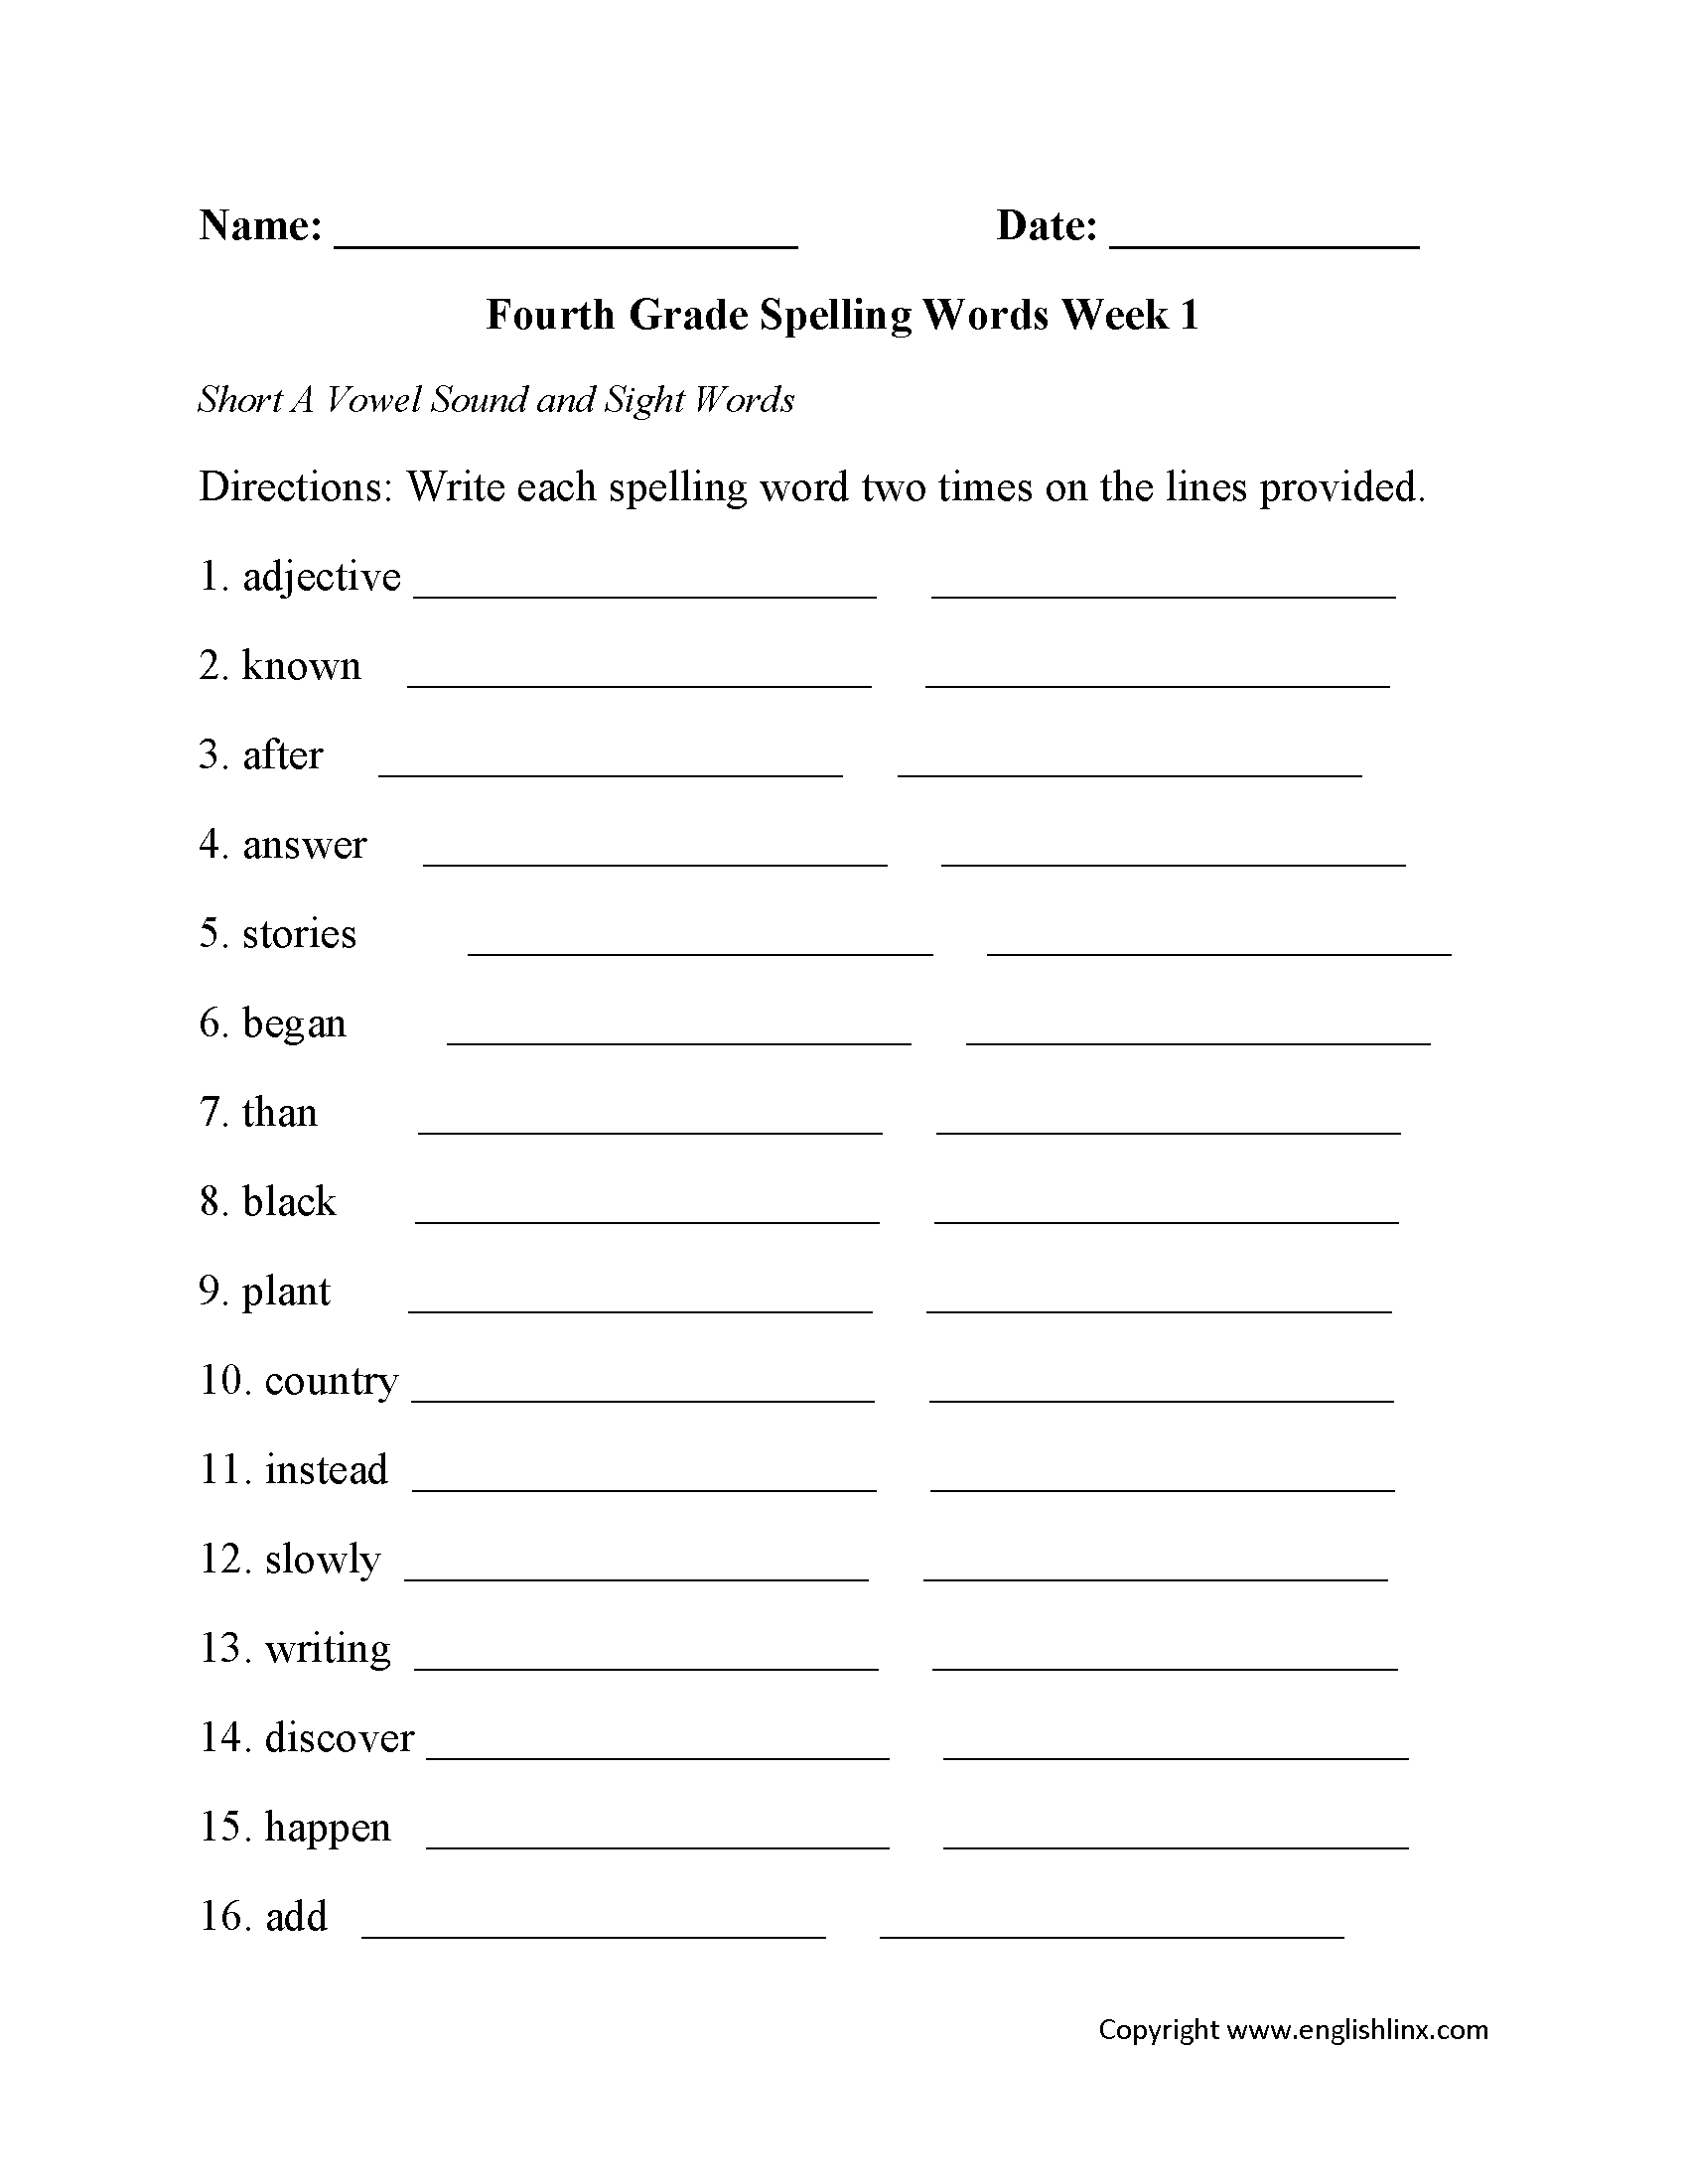 Spelling Worksheets | Fourth Grade Spelling Worksheets - Free Printable Spelling Worksheets